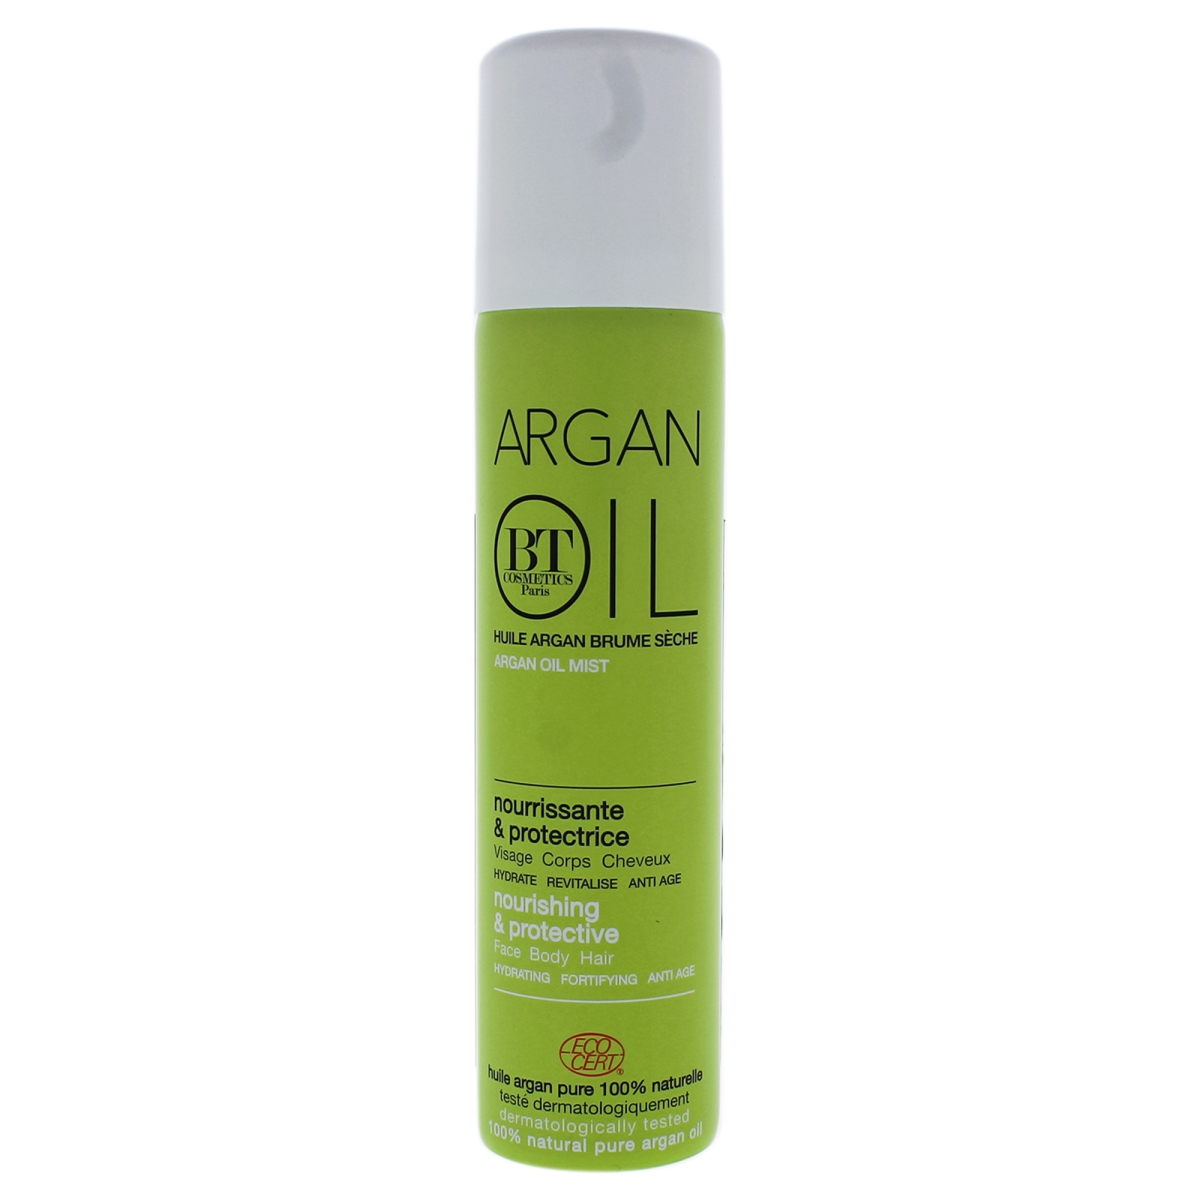 I0087716 Argan Oil Mist Body Spray For Unisex - 2.5 Oz